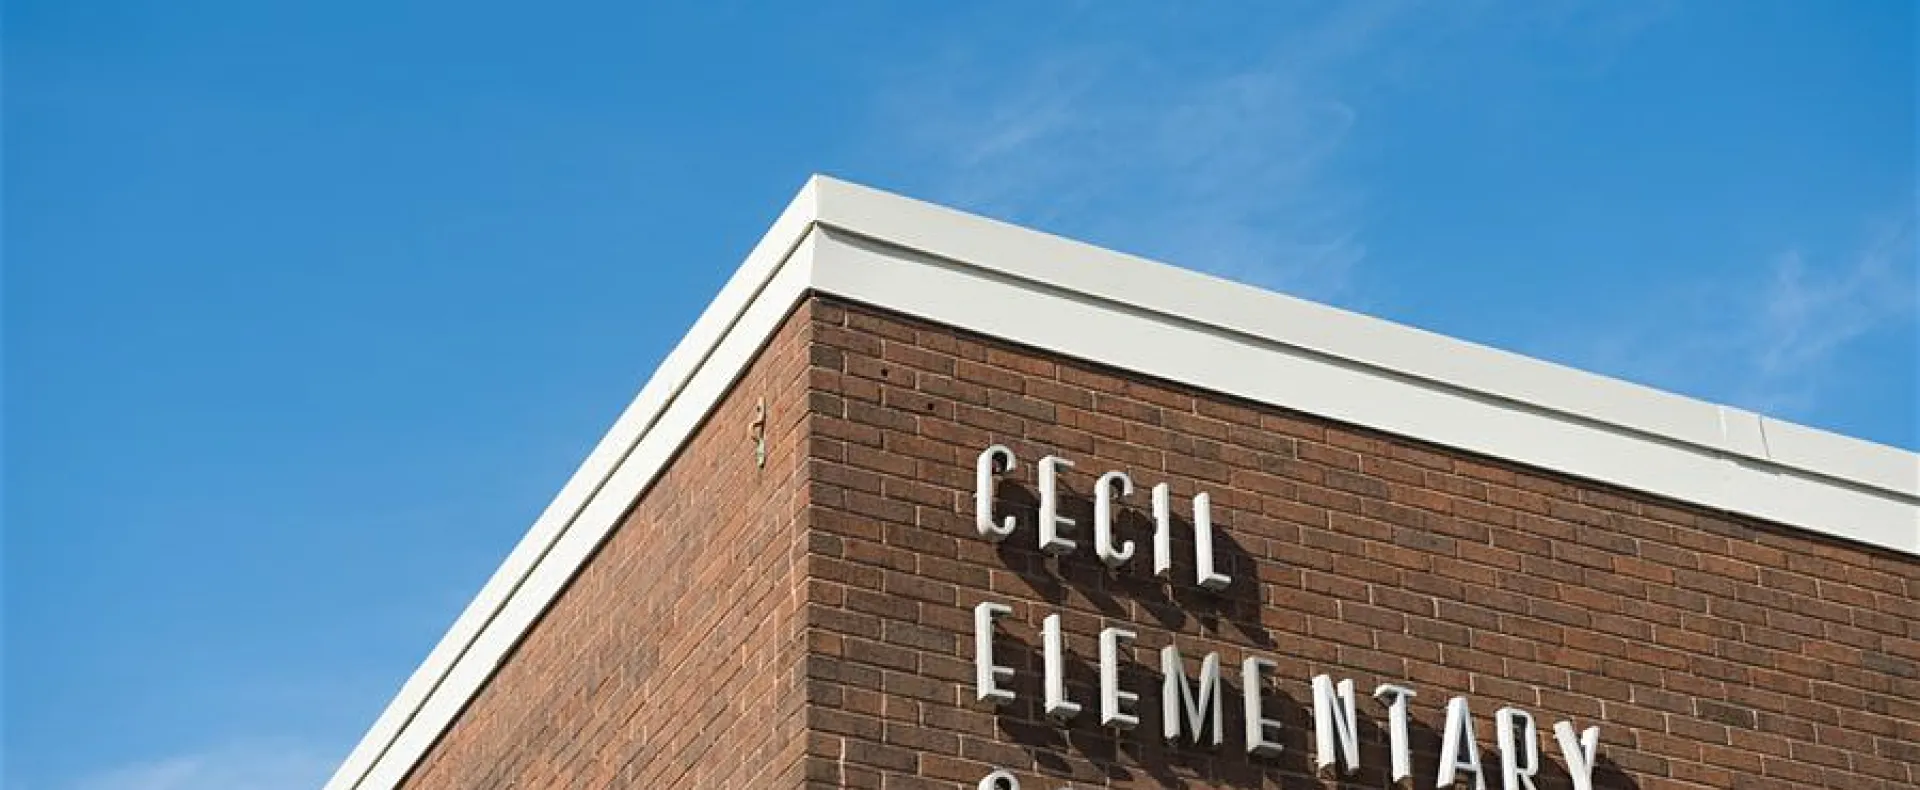 Cecil Elementary School